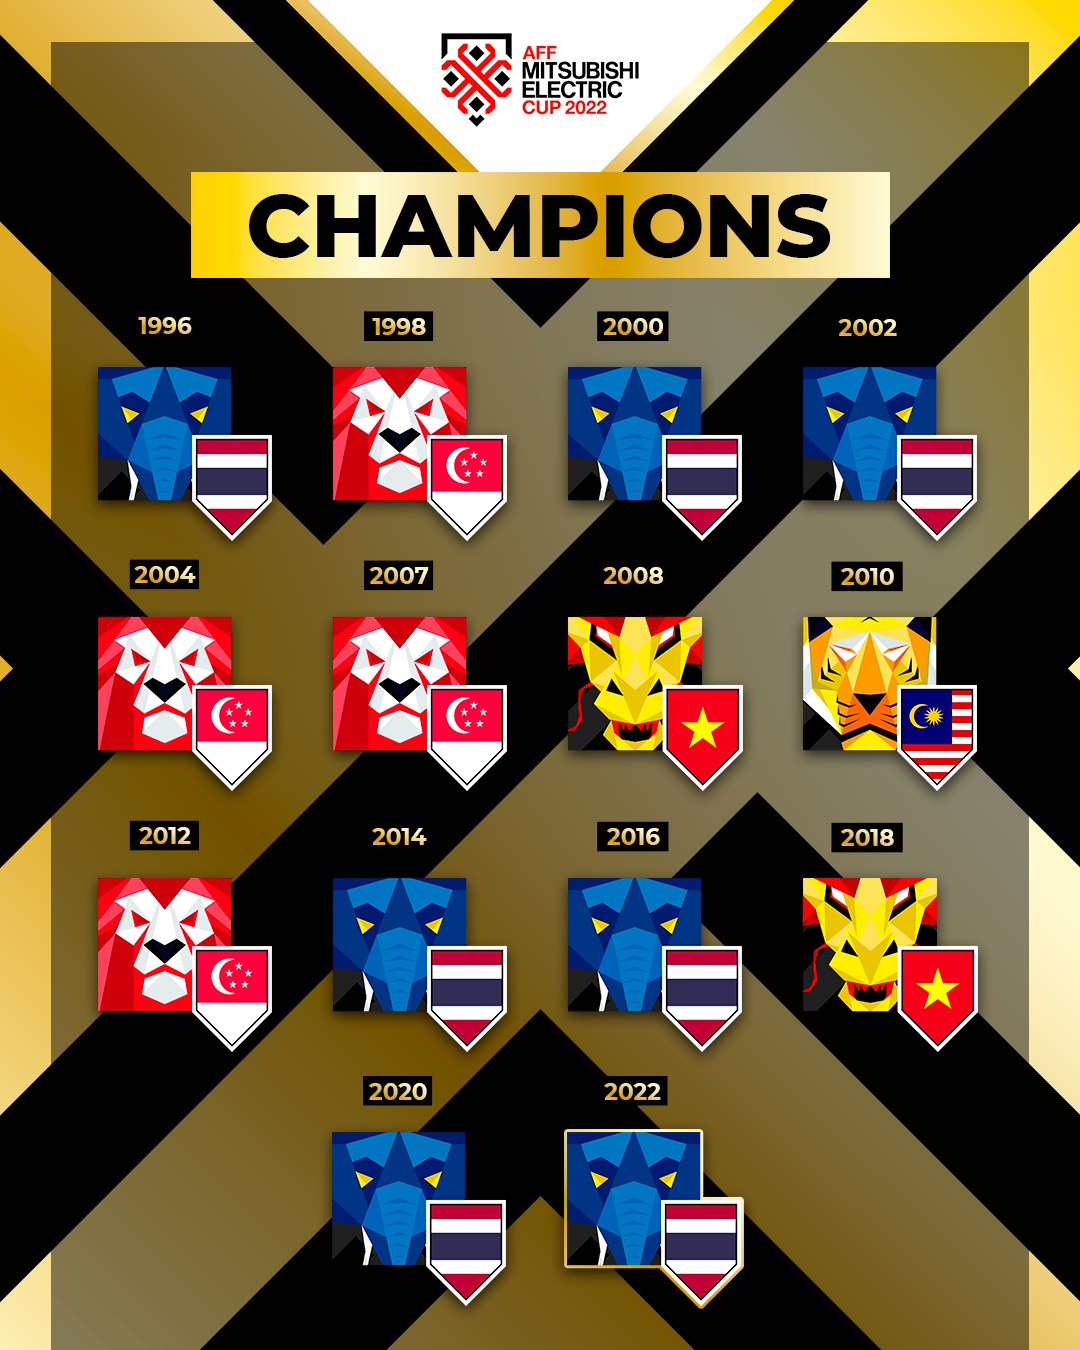 ส่องคอมเมนท์แฟนบอล เวียดนาม หลังไทยคว้าแชมป์ AFF 2022 Thaiger ข่าวไทย